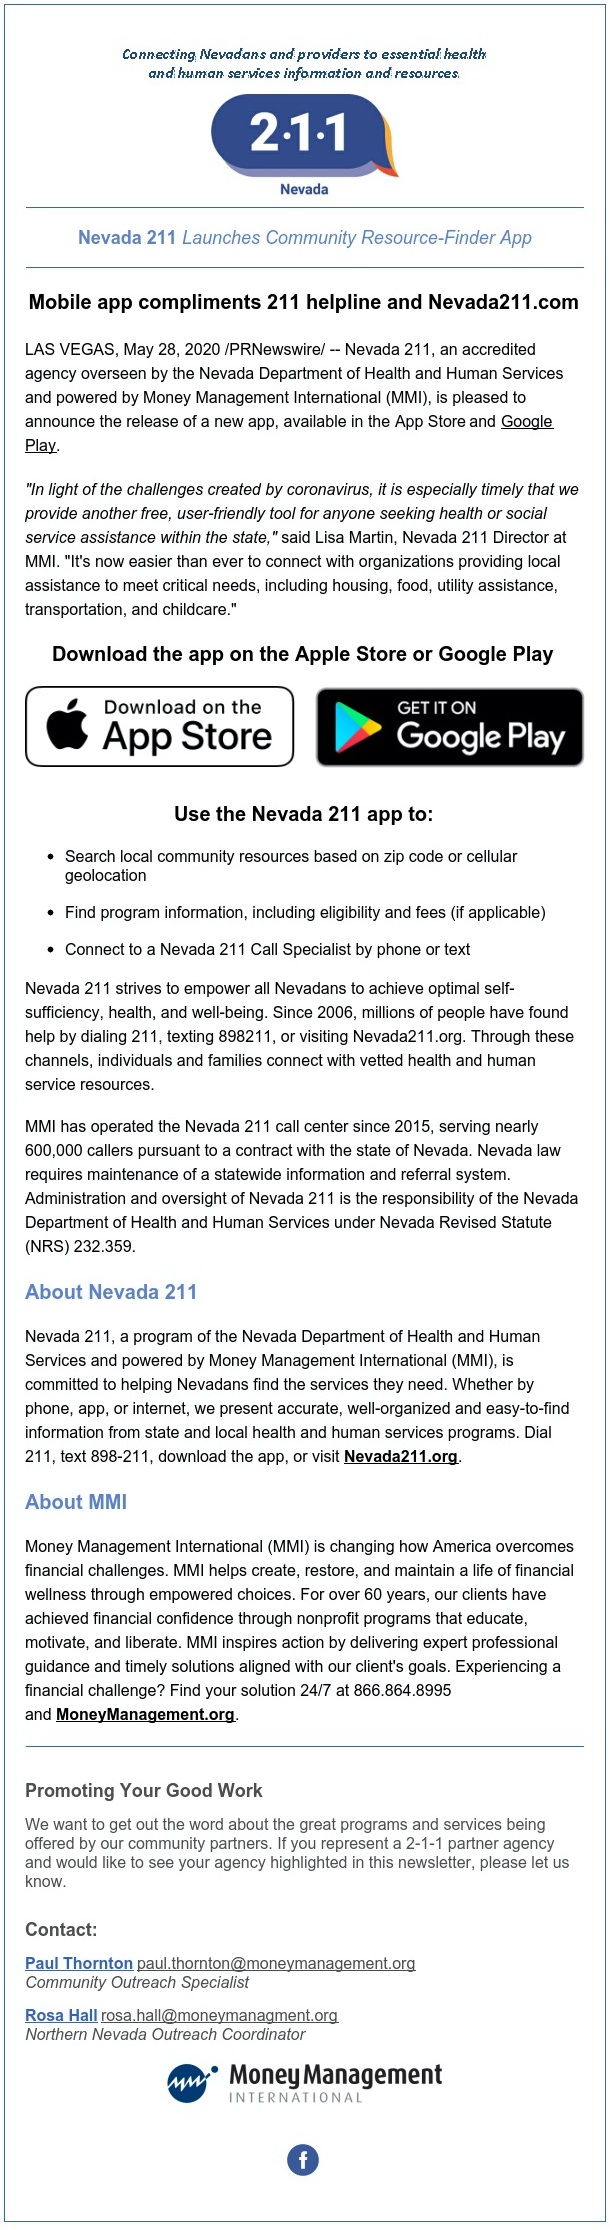 Nevada 211 June 2020 Newsletter Resource Finder App Announcement